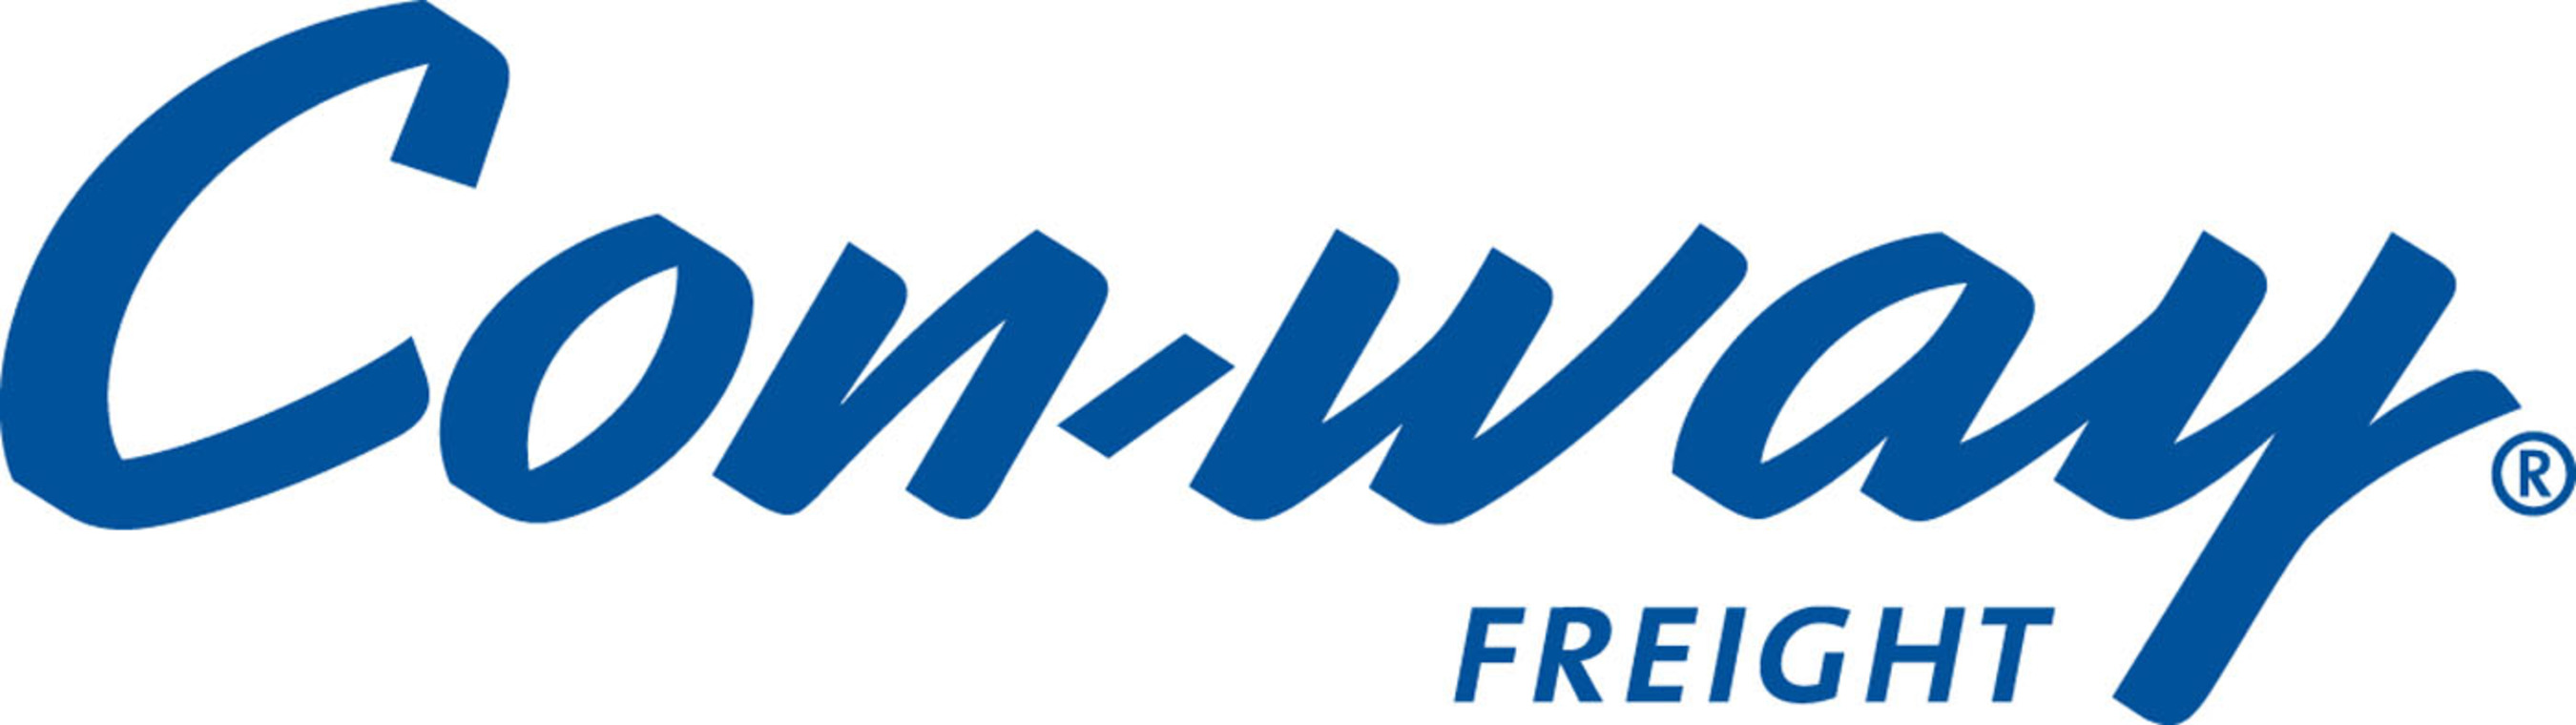 Con-way Freight logo.